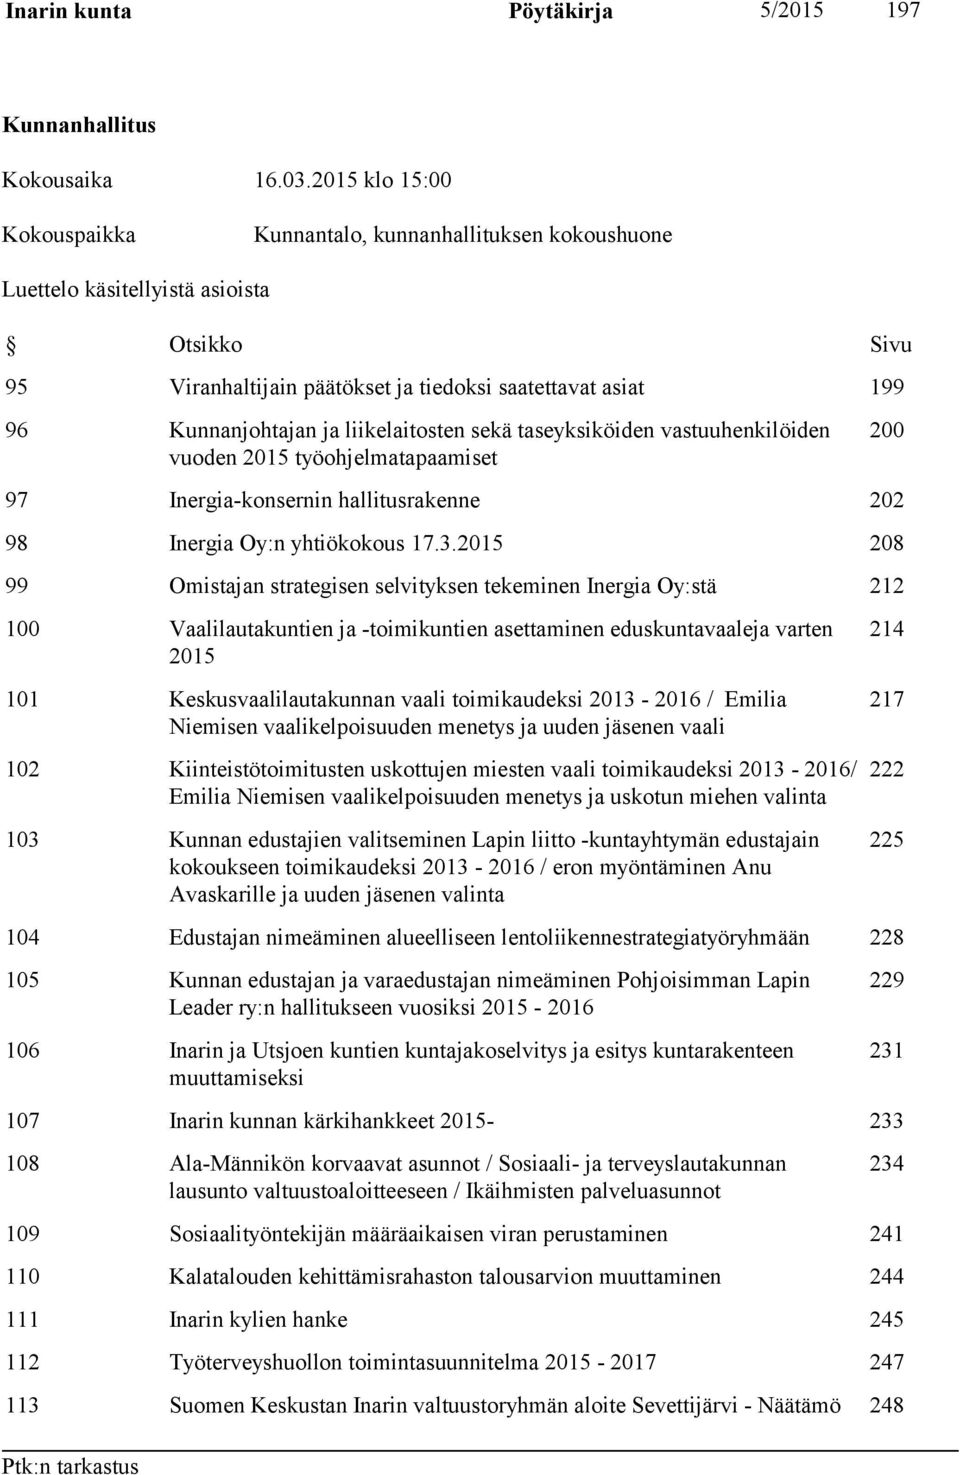 liikelaitosten sekä taseyksiköiden vastuuhenkilöiden vuoden 2015 työohjelmatapaamiset 200 97 Inergia-konsernin hallitusrakenne 202 98 Inergia Oy:n yhtiökokous 17.3.